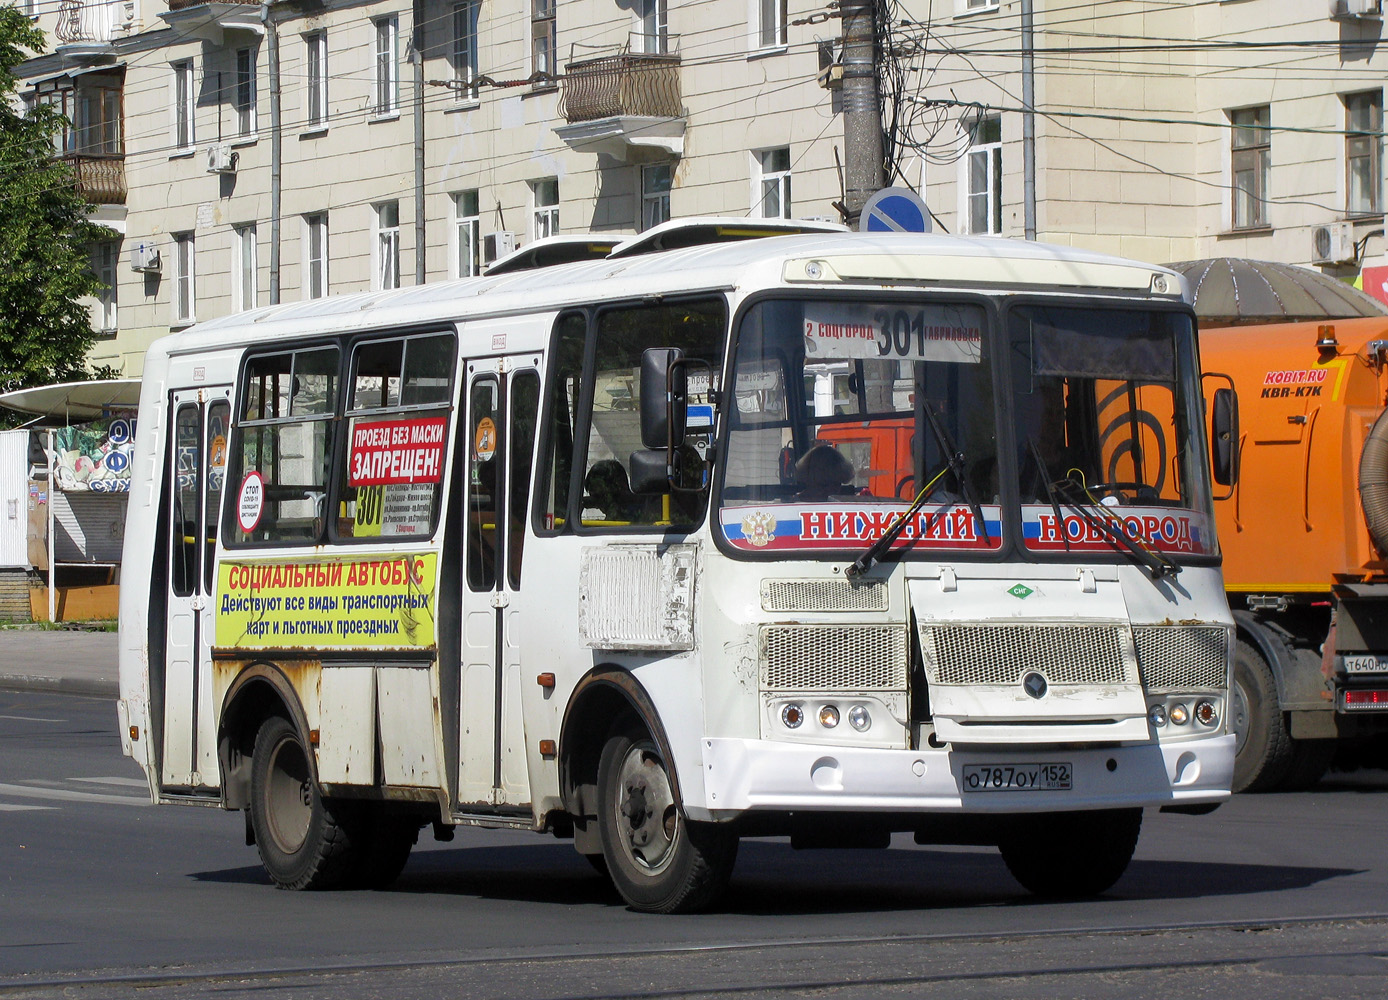 Nizhegorodskaya region, PAZ-32054 # О 787 ОУ 152